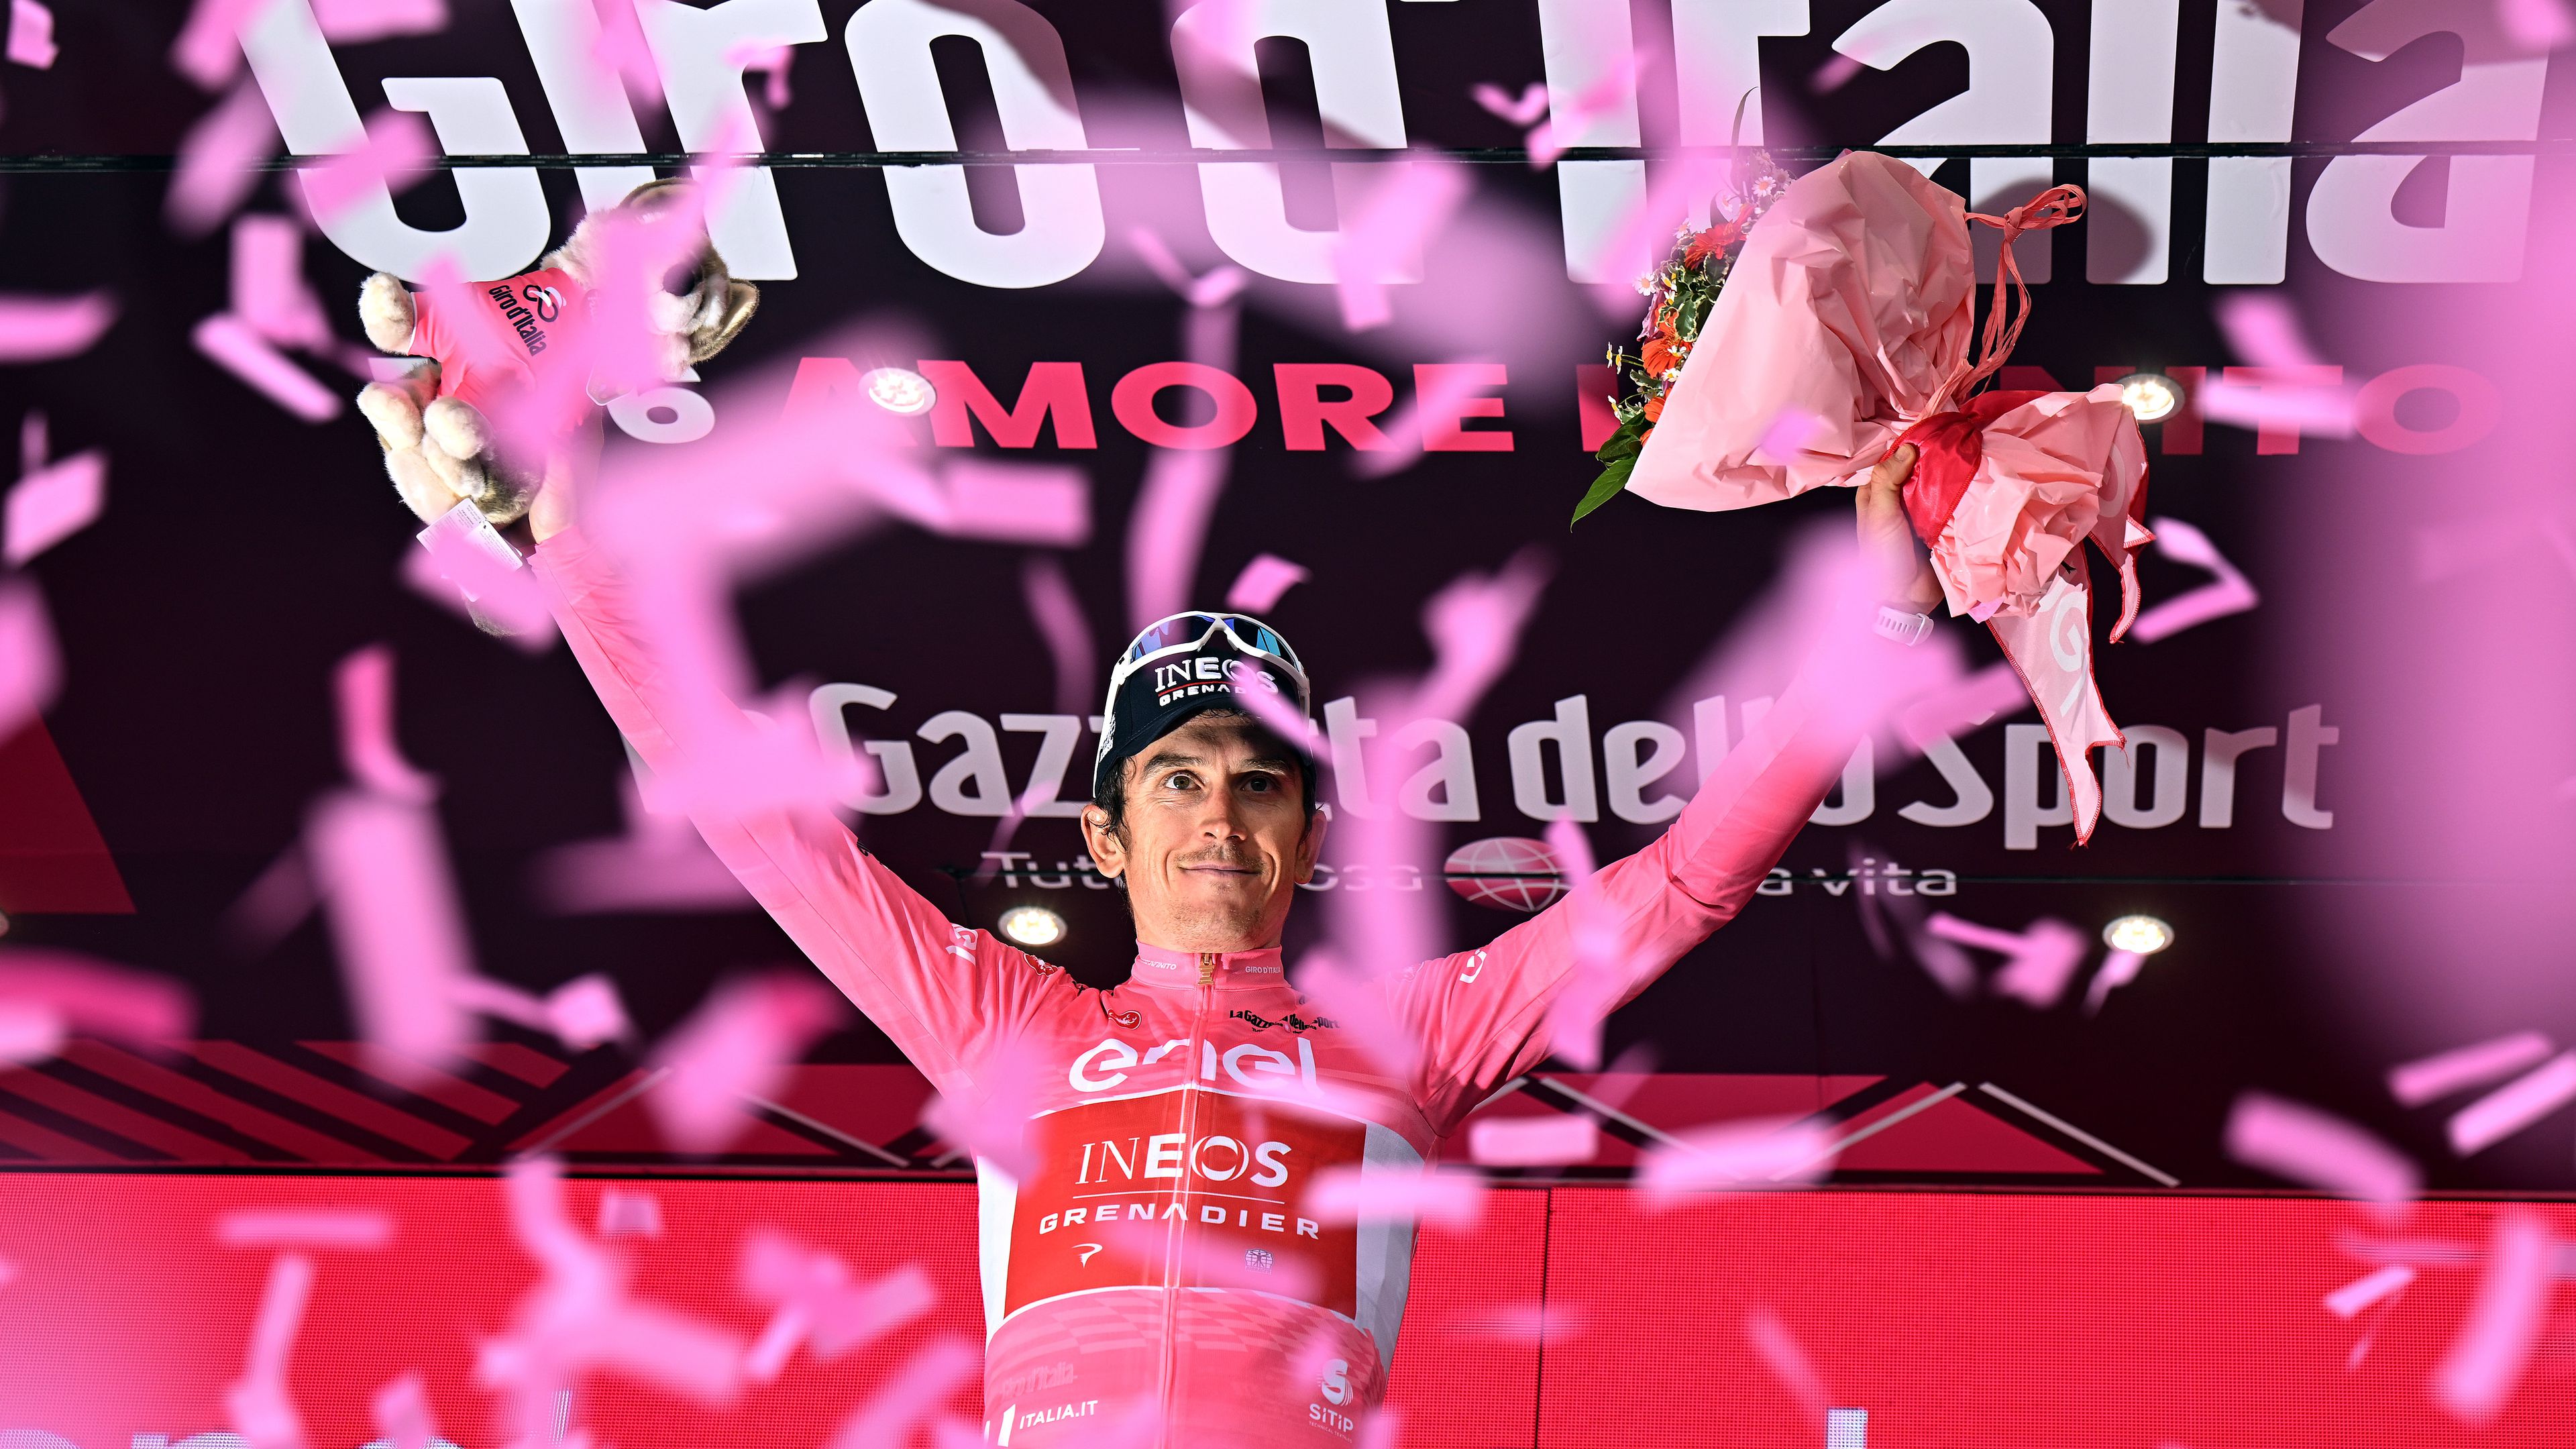 Thomas átvette a rózsaszín trikót a Giro d’Italián